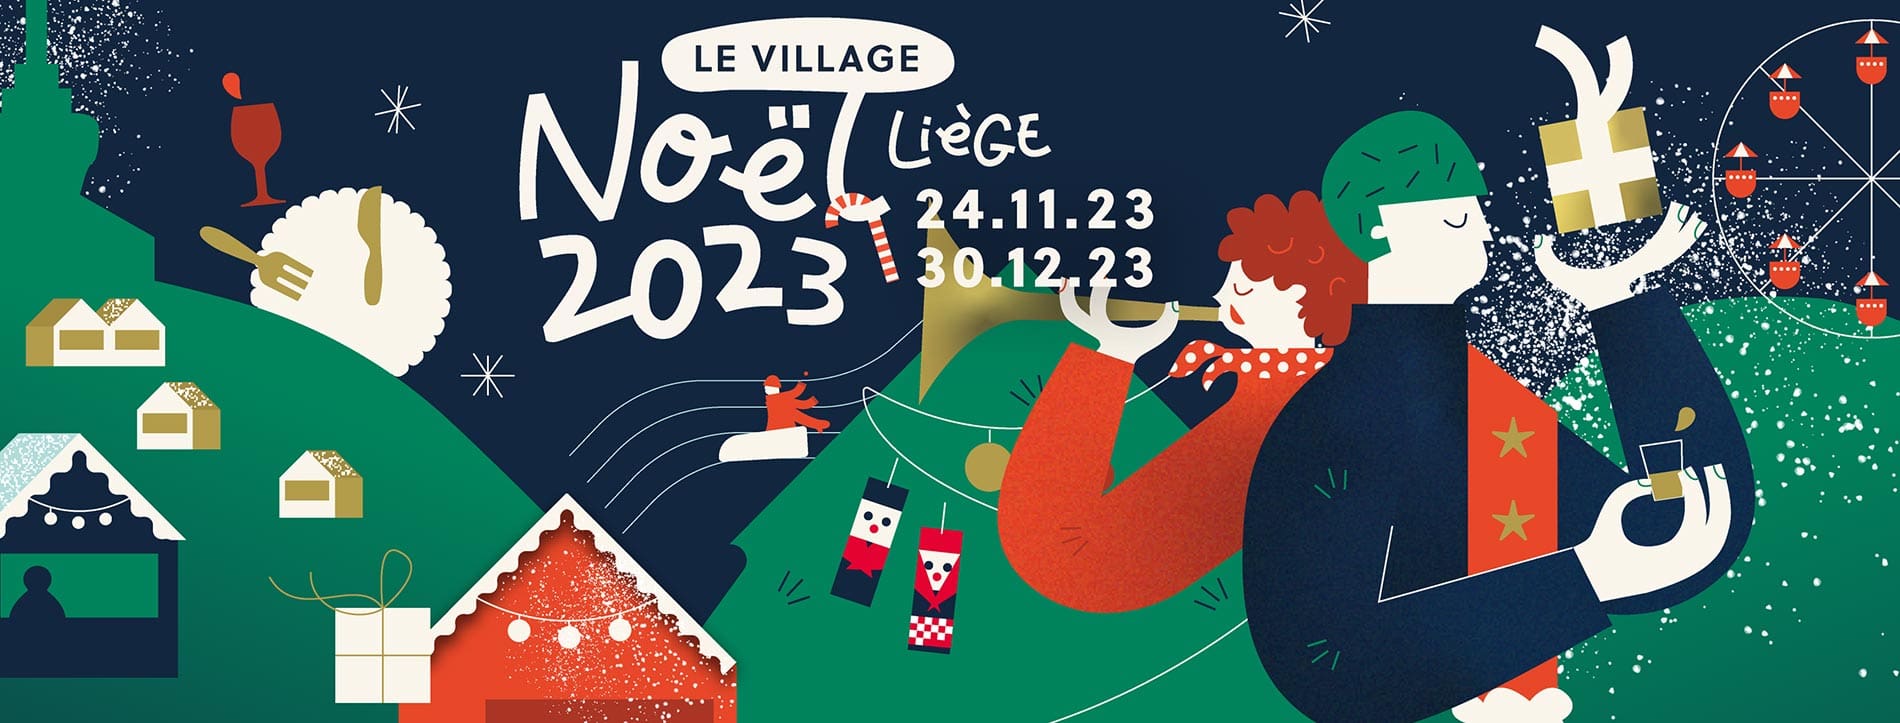 Village de Noël de Liège